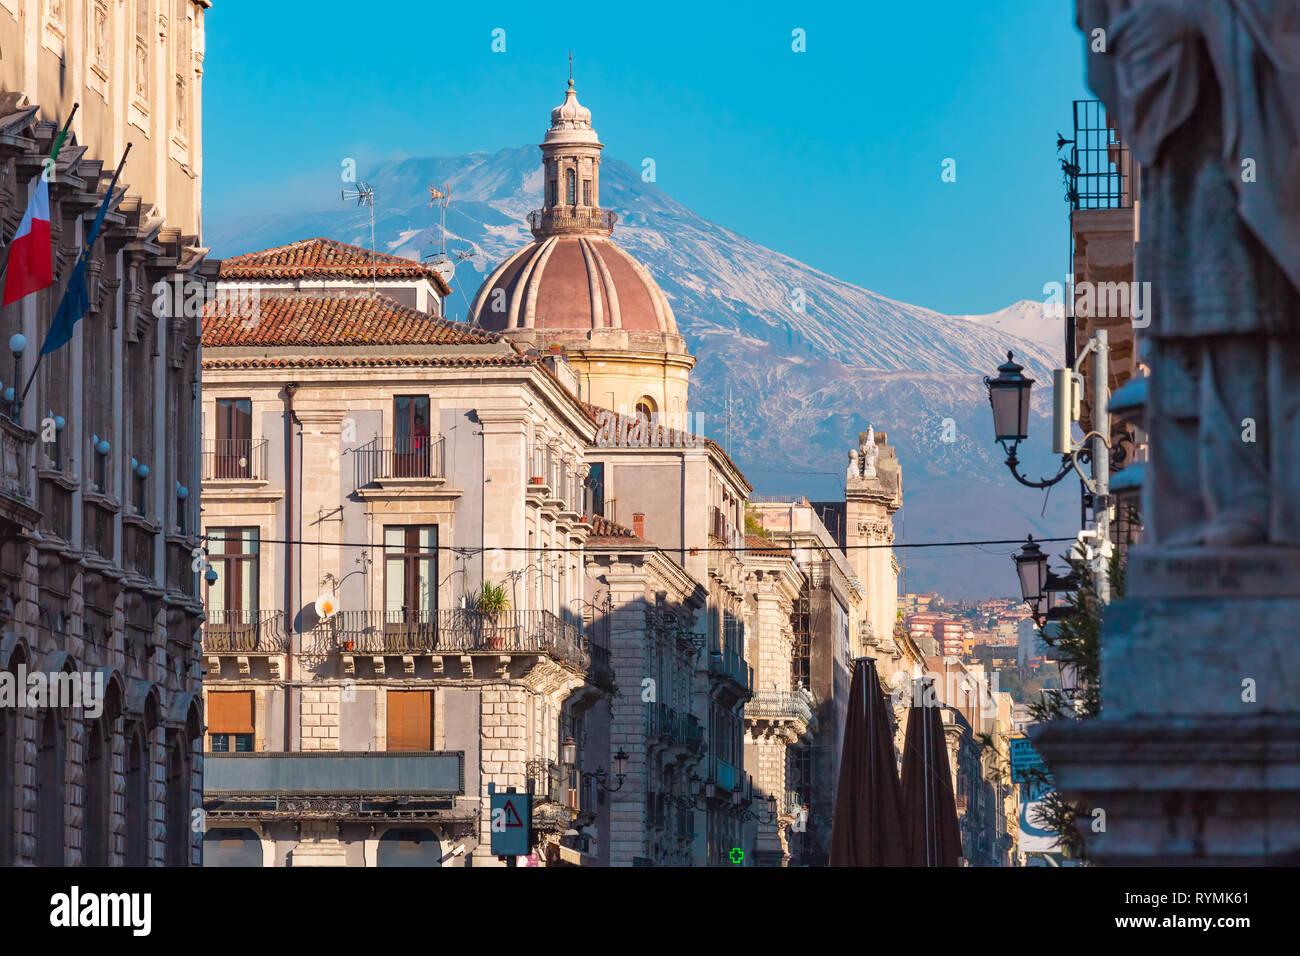 Catania and mount Etna, Sicily, Italy Stock Photo